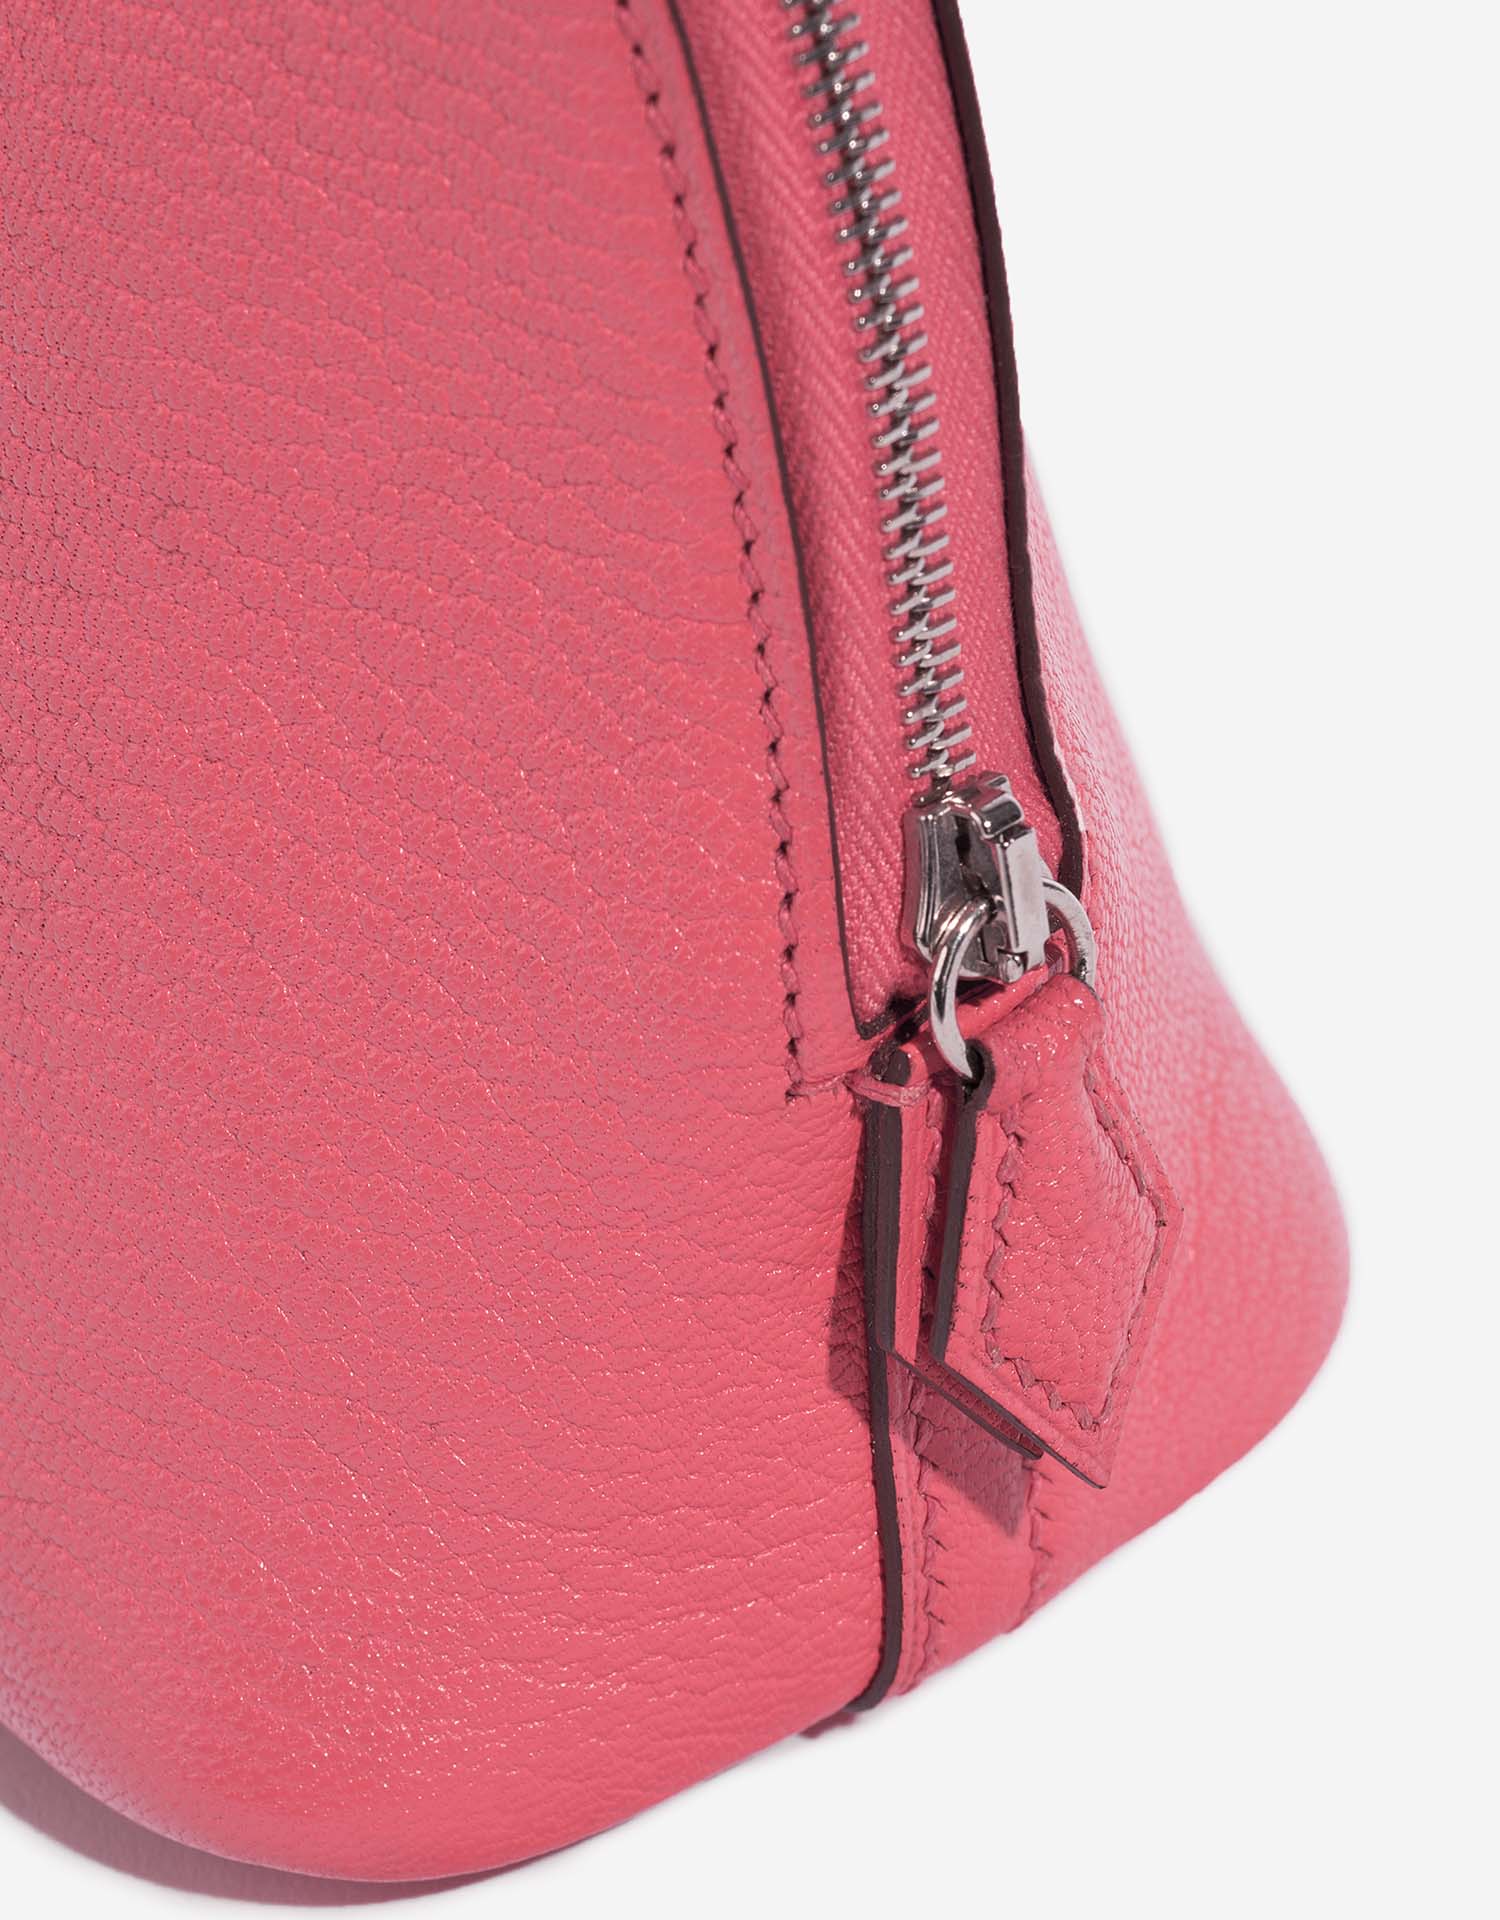 Hermès Bolide Mini RoseLipstick Verschluss-System | Verkaufen Sie Ihre Designer-Tasche auf Saclab.com